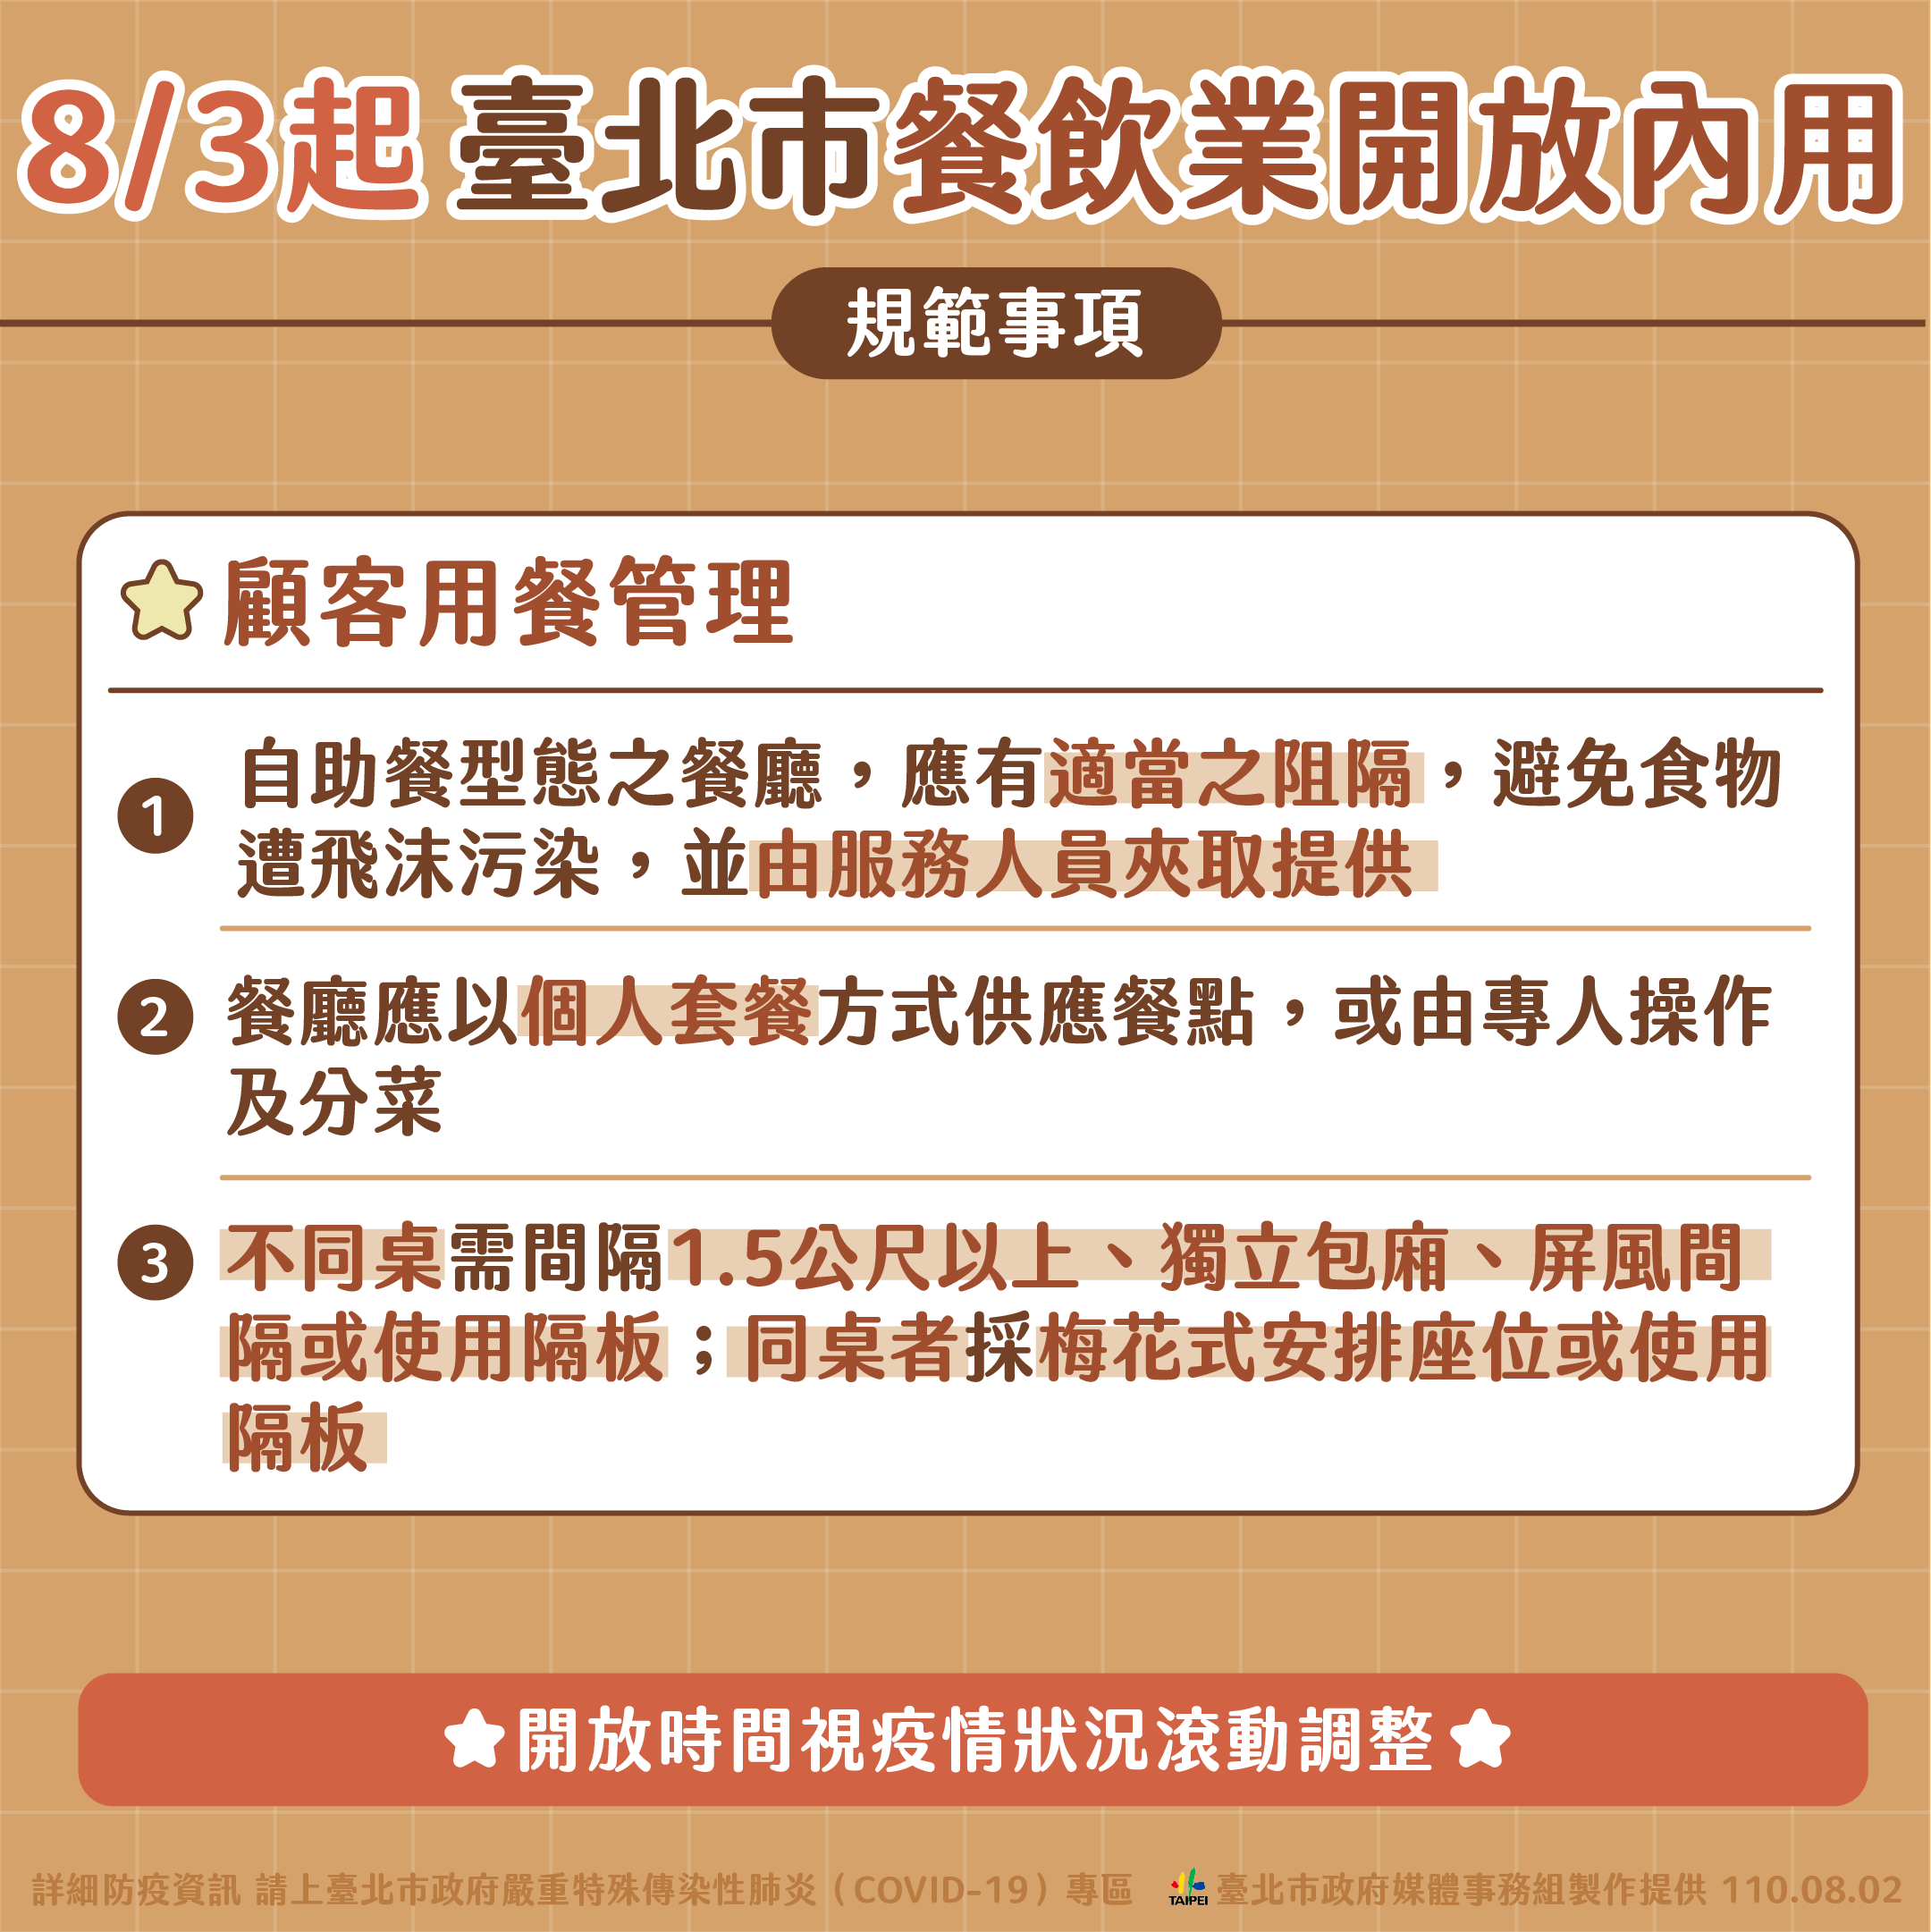 Pengumuman terkait ketentuan makan dalam restoran. Denda maksimal bagi pelanggar ketentuan-ketentuan ini akan dikenakan denda, maksimal sebesar 15 ribu NTD. Sumber: Pemerintah Kota Taipei